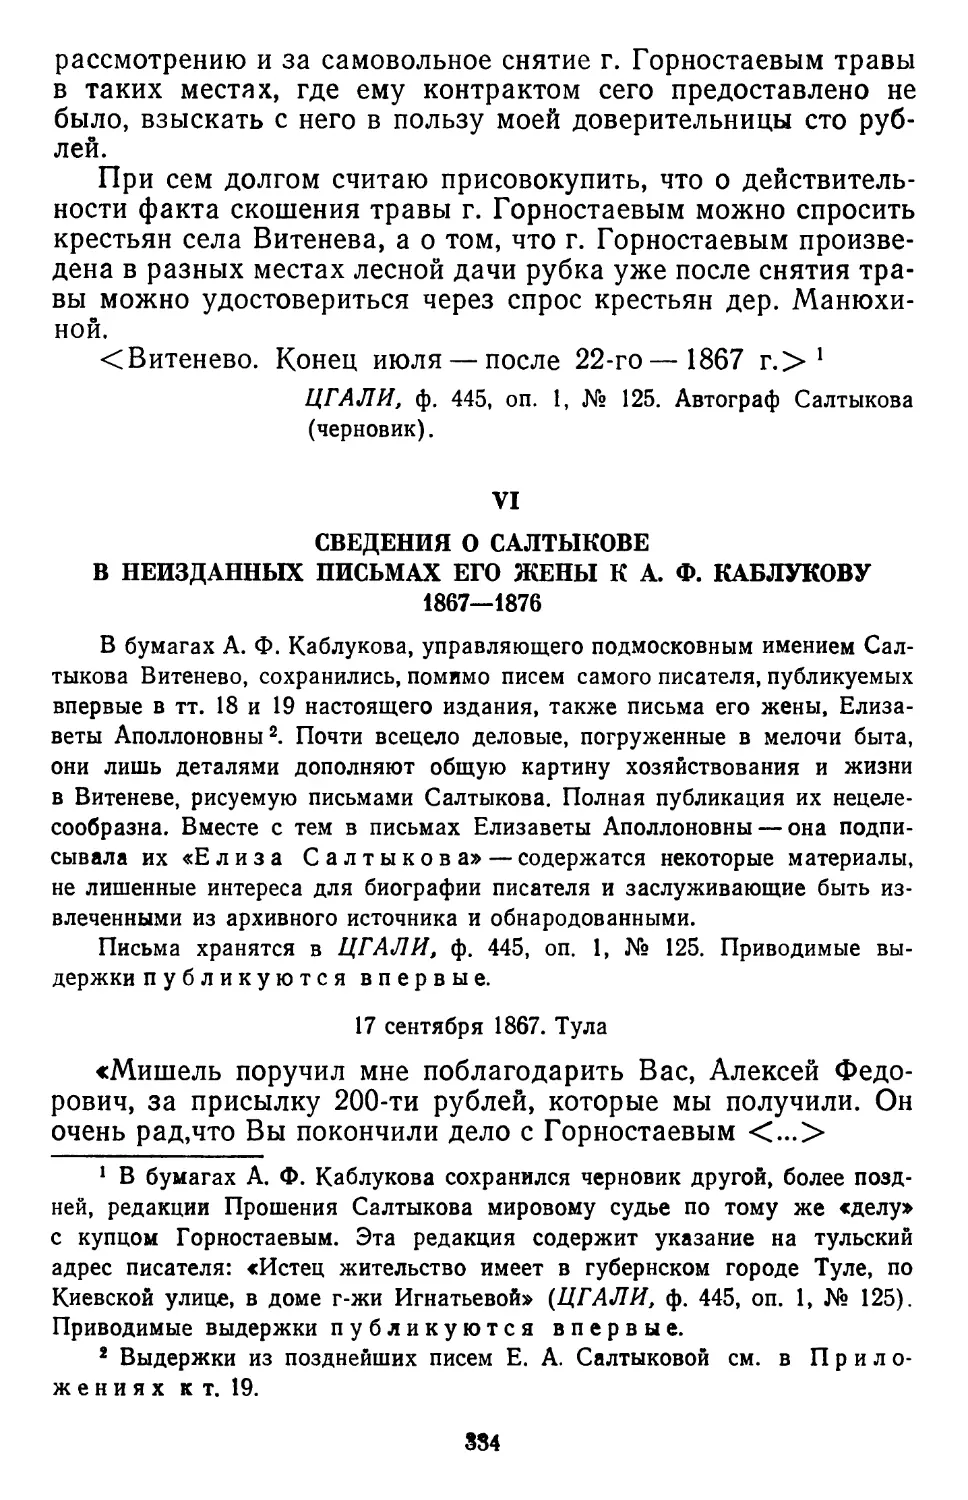 VI. Сведения о Салтыкове в неизданных письмах его жены к А. Ф. Каблукову. 1867—1876